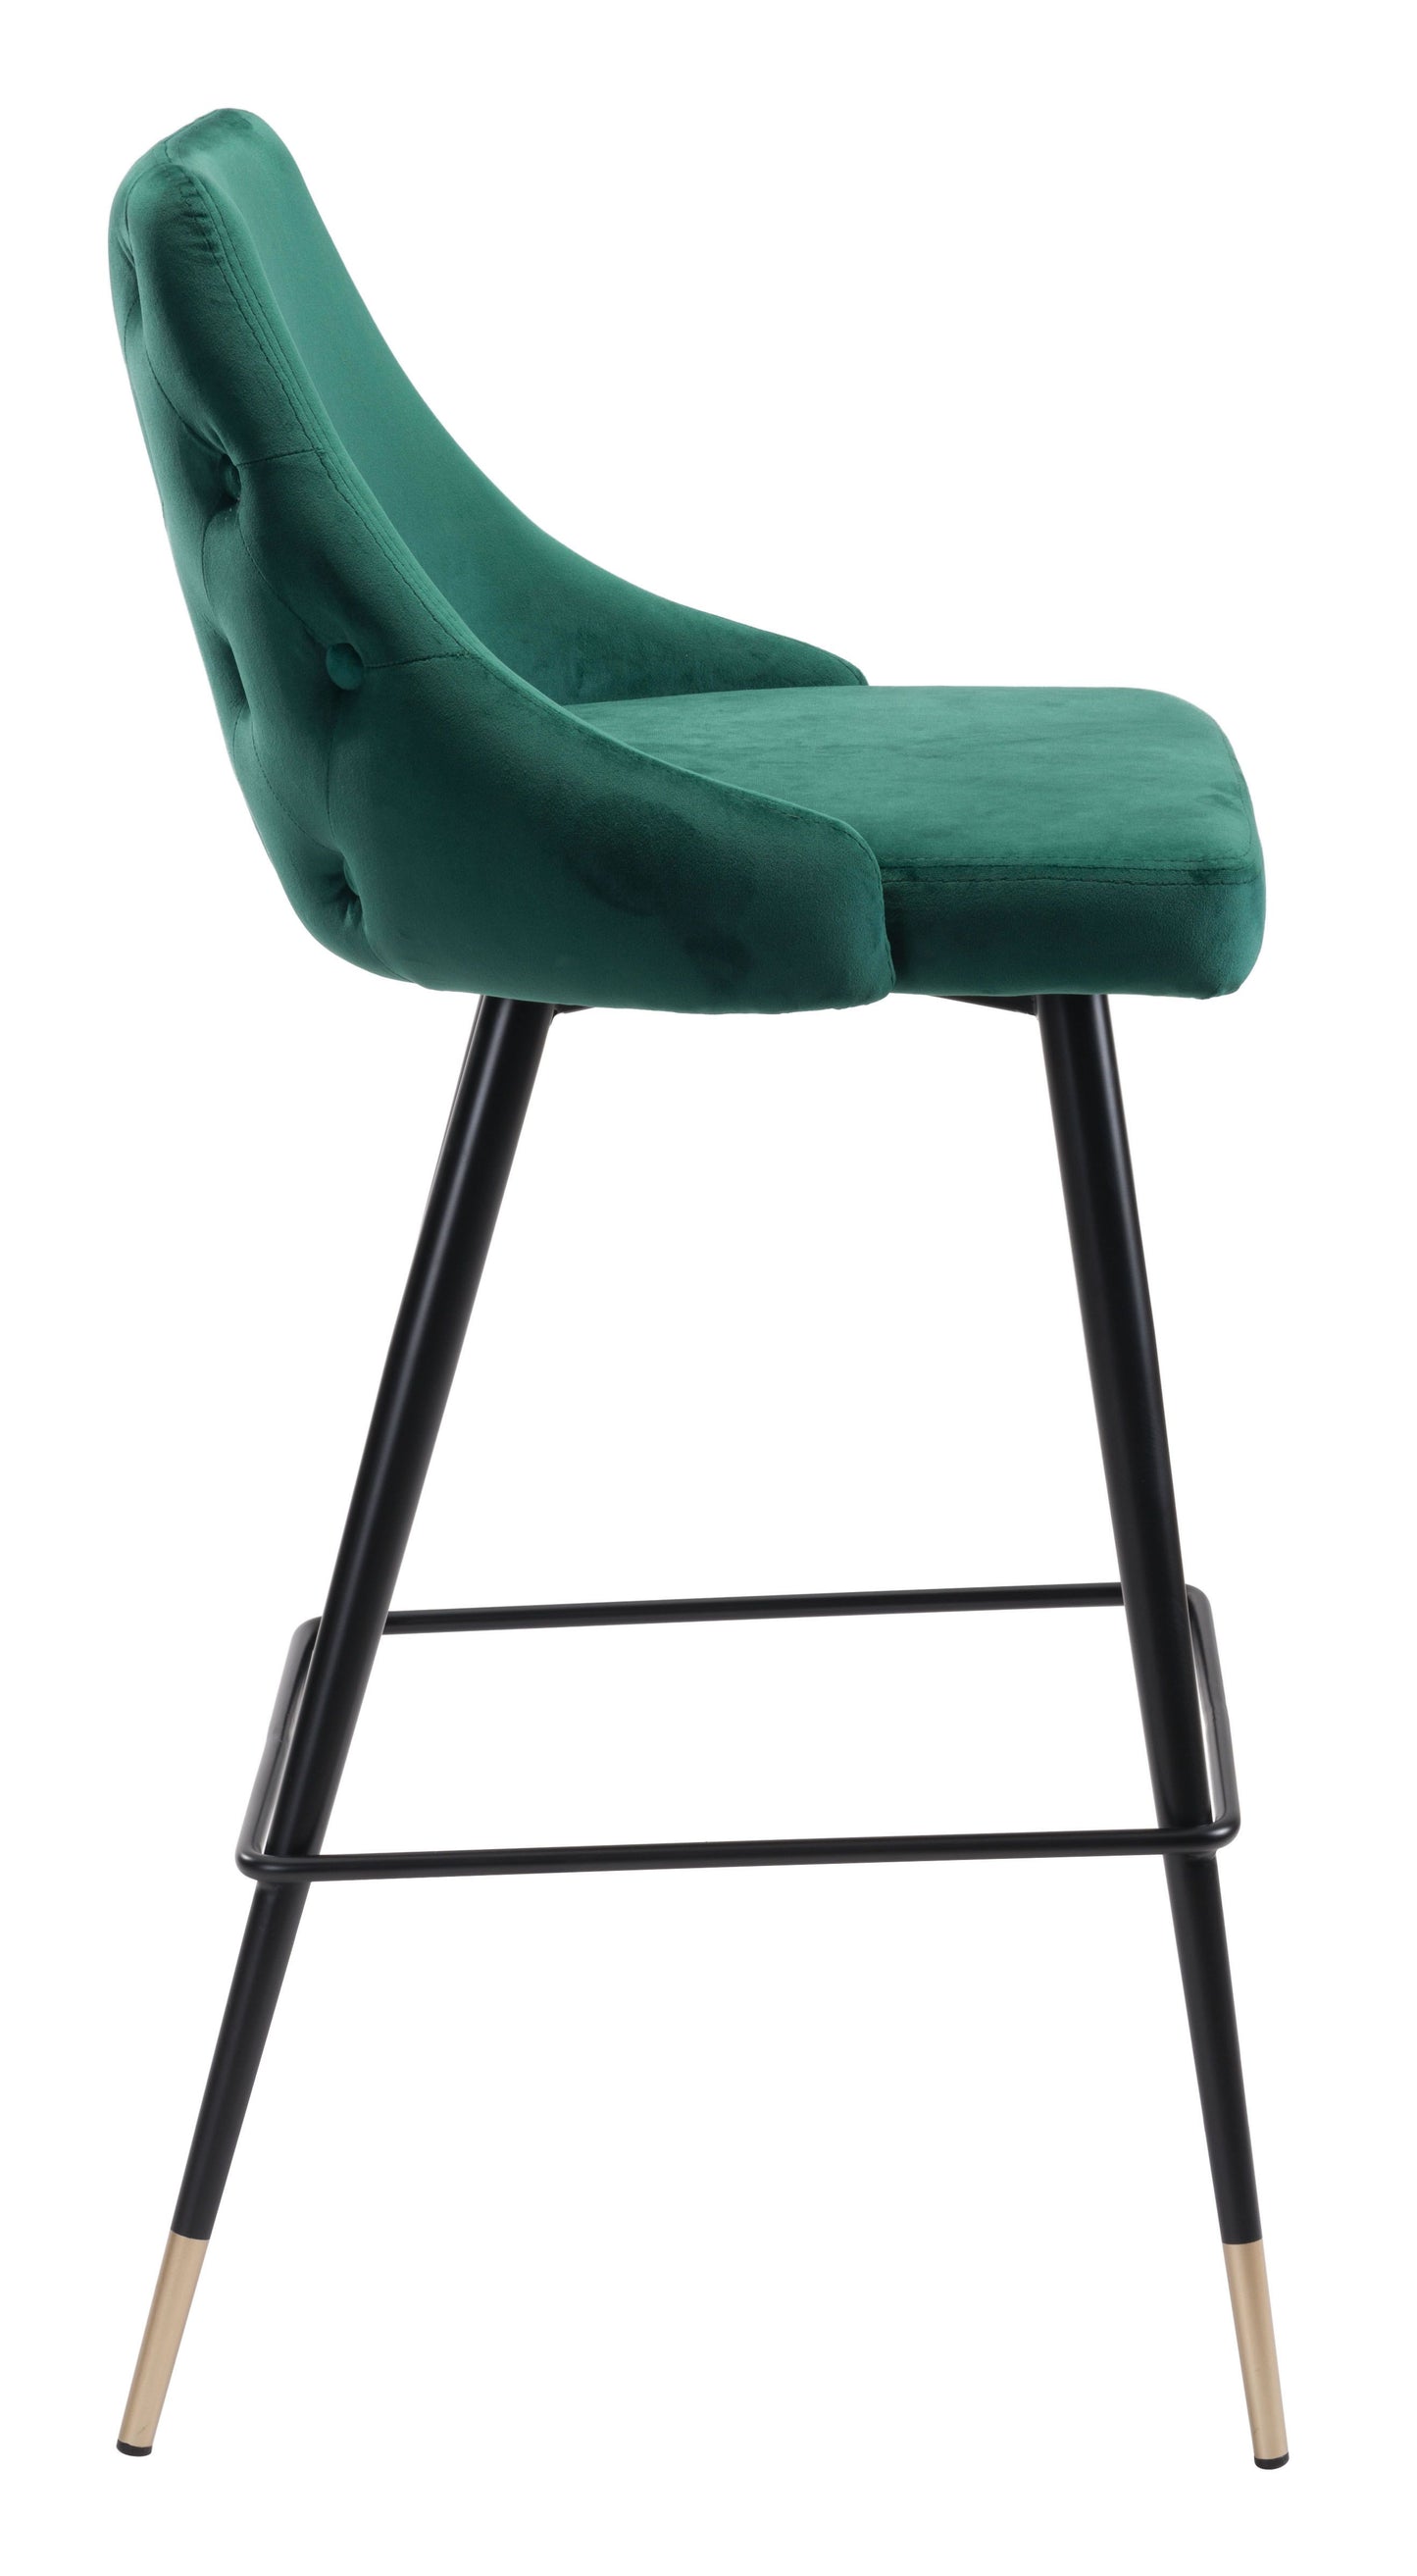 Piccolo Bar Chair Green